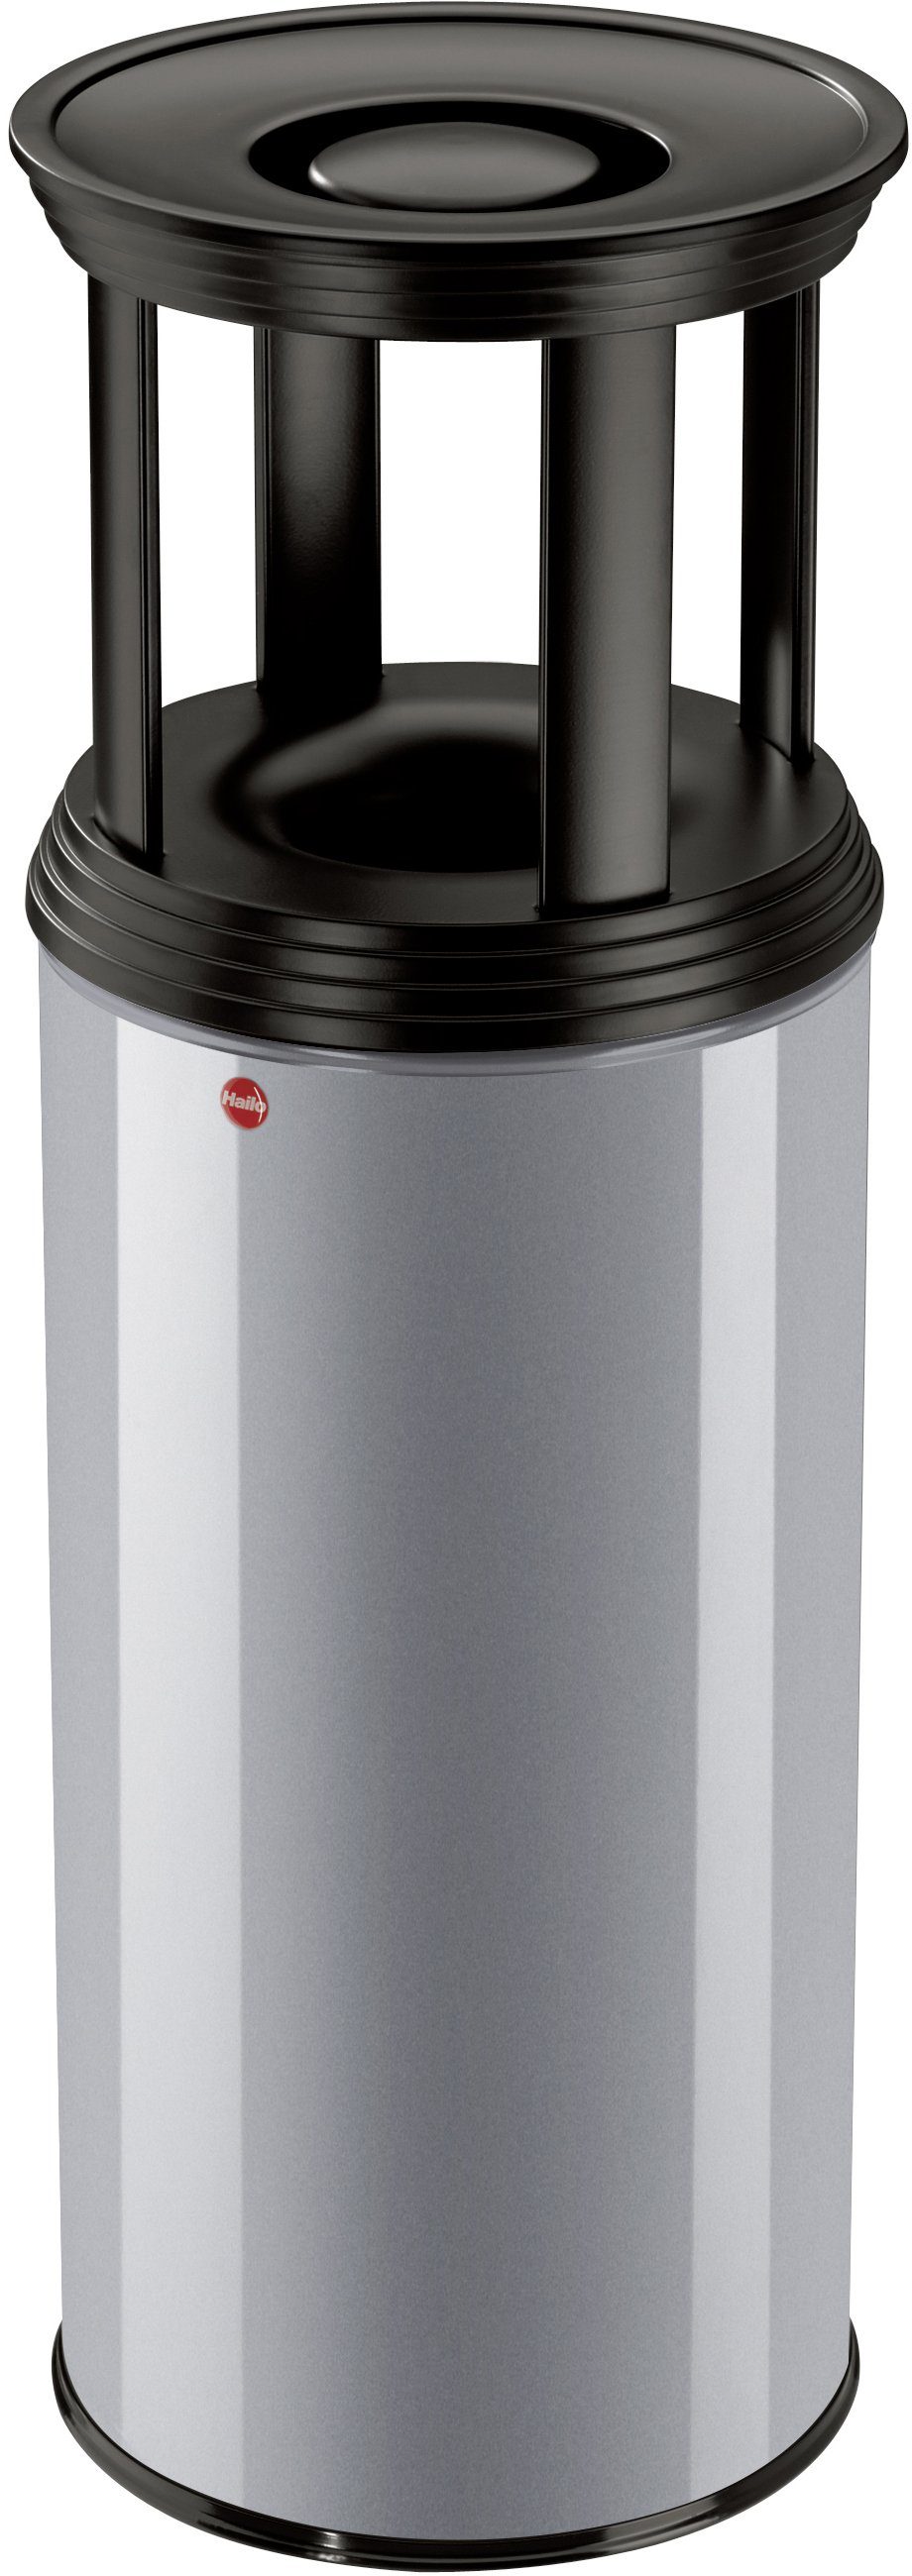 Hailo Aschenbecher ProfiLine Safe Plus XL, 45 Liter, Stahlblech, flammenlöschender Papierkorb mit Ascherschale aluminiumfarben/schwarz